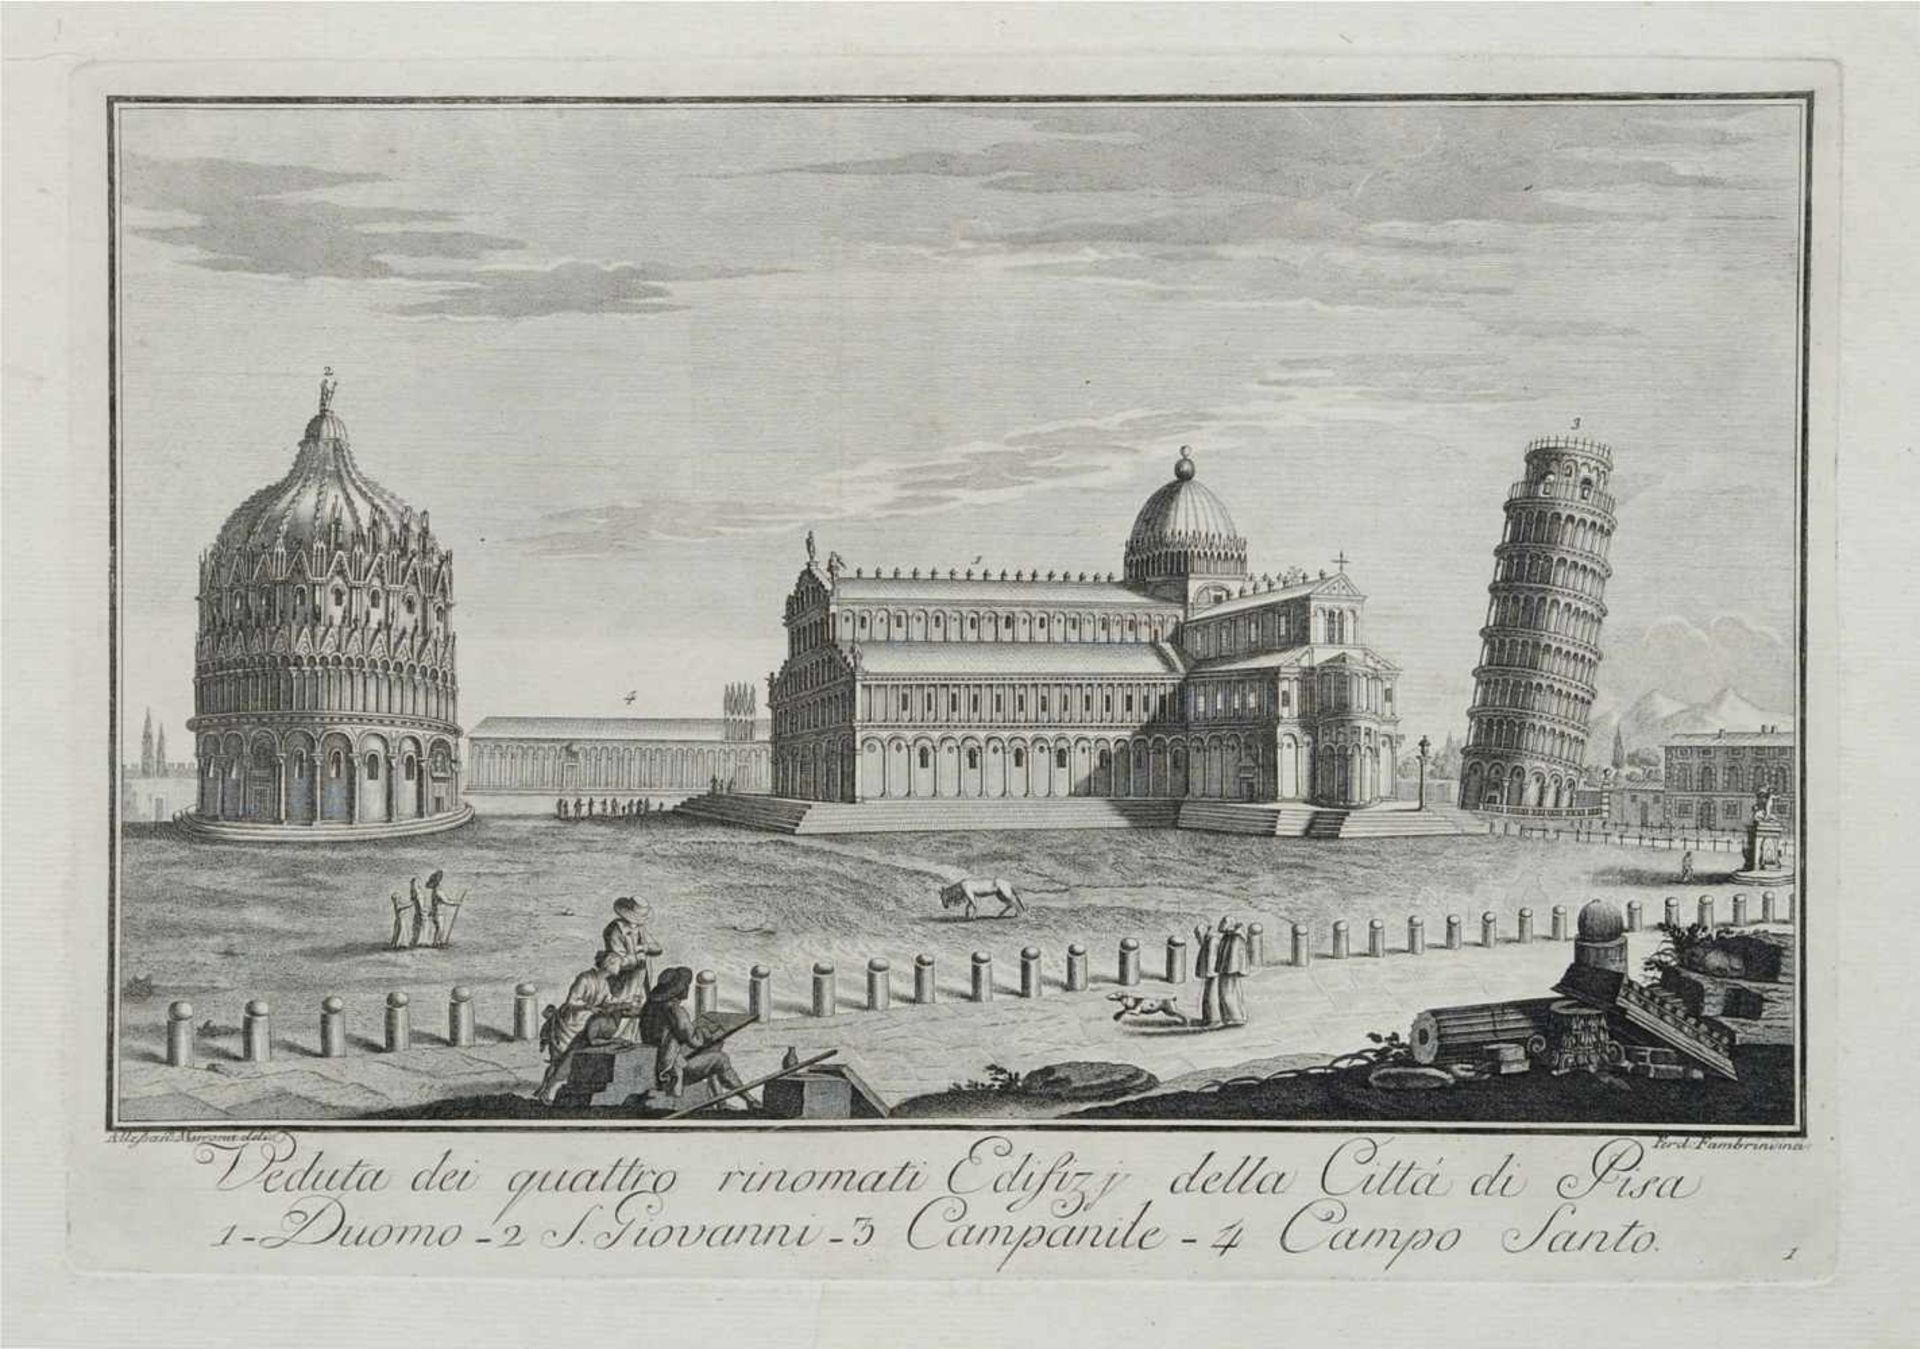 Ferdinando Fambrini, Zwölf Ansichten von Pisa. 1788.Ferdinando Fambrini Erste Erw. 1764  letzte